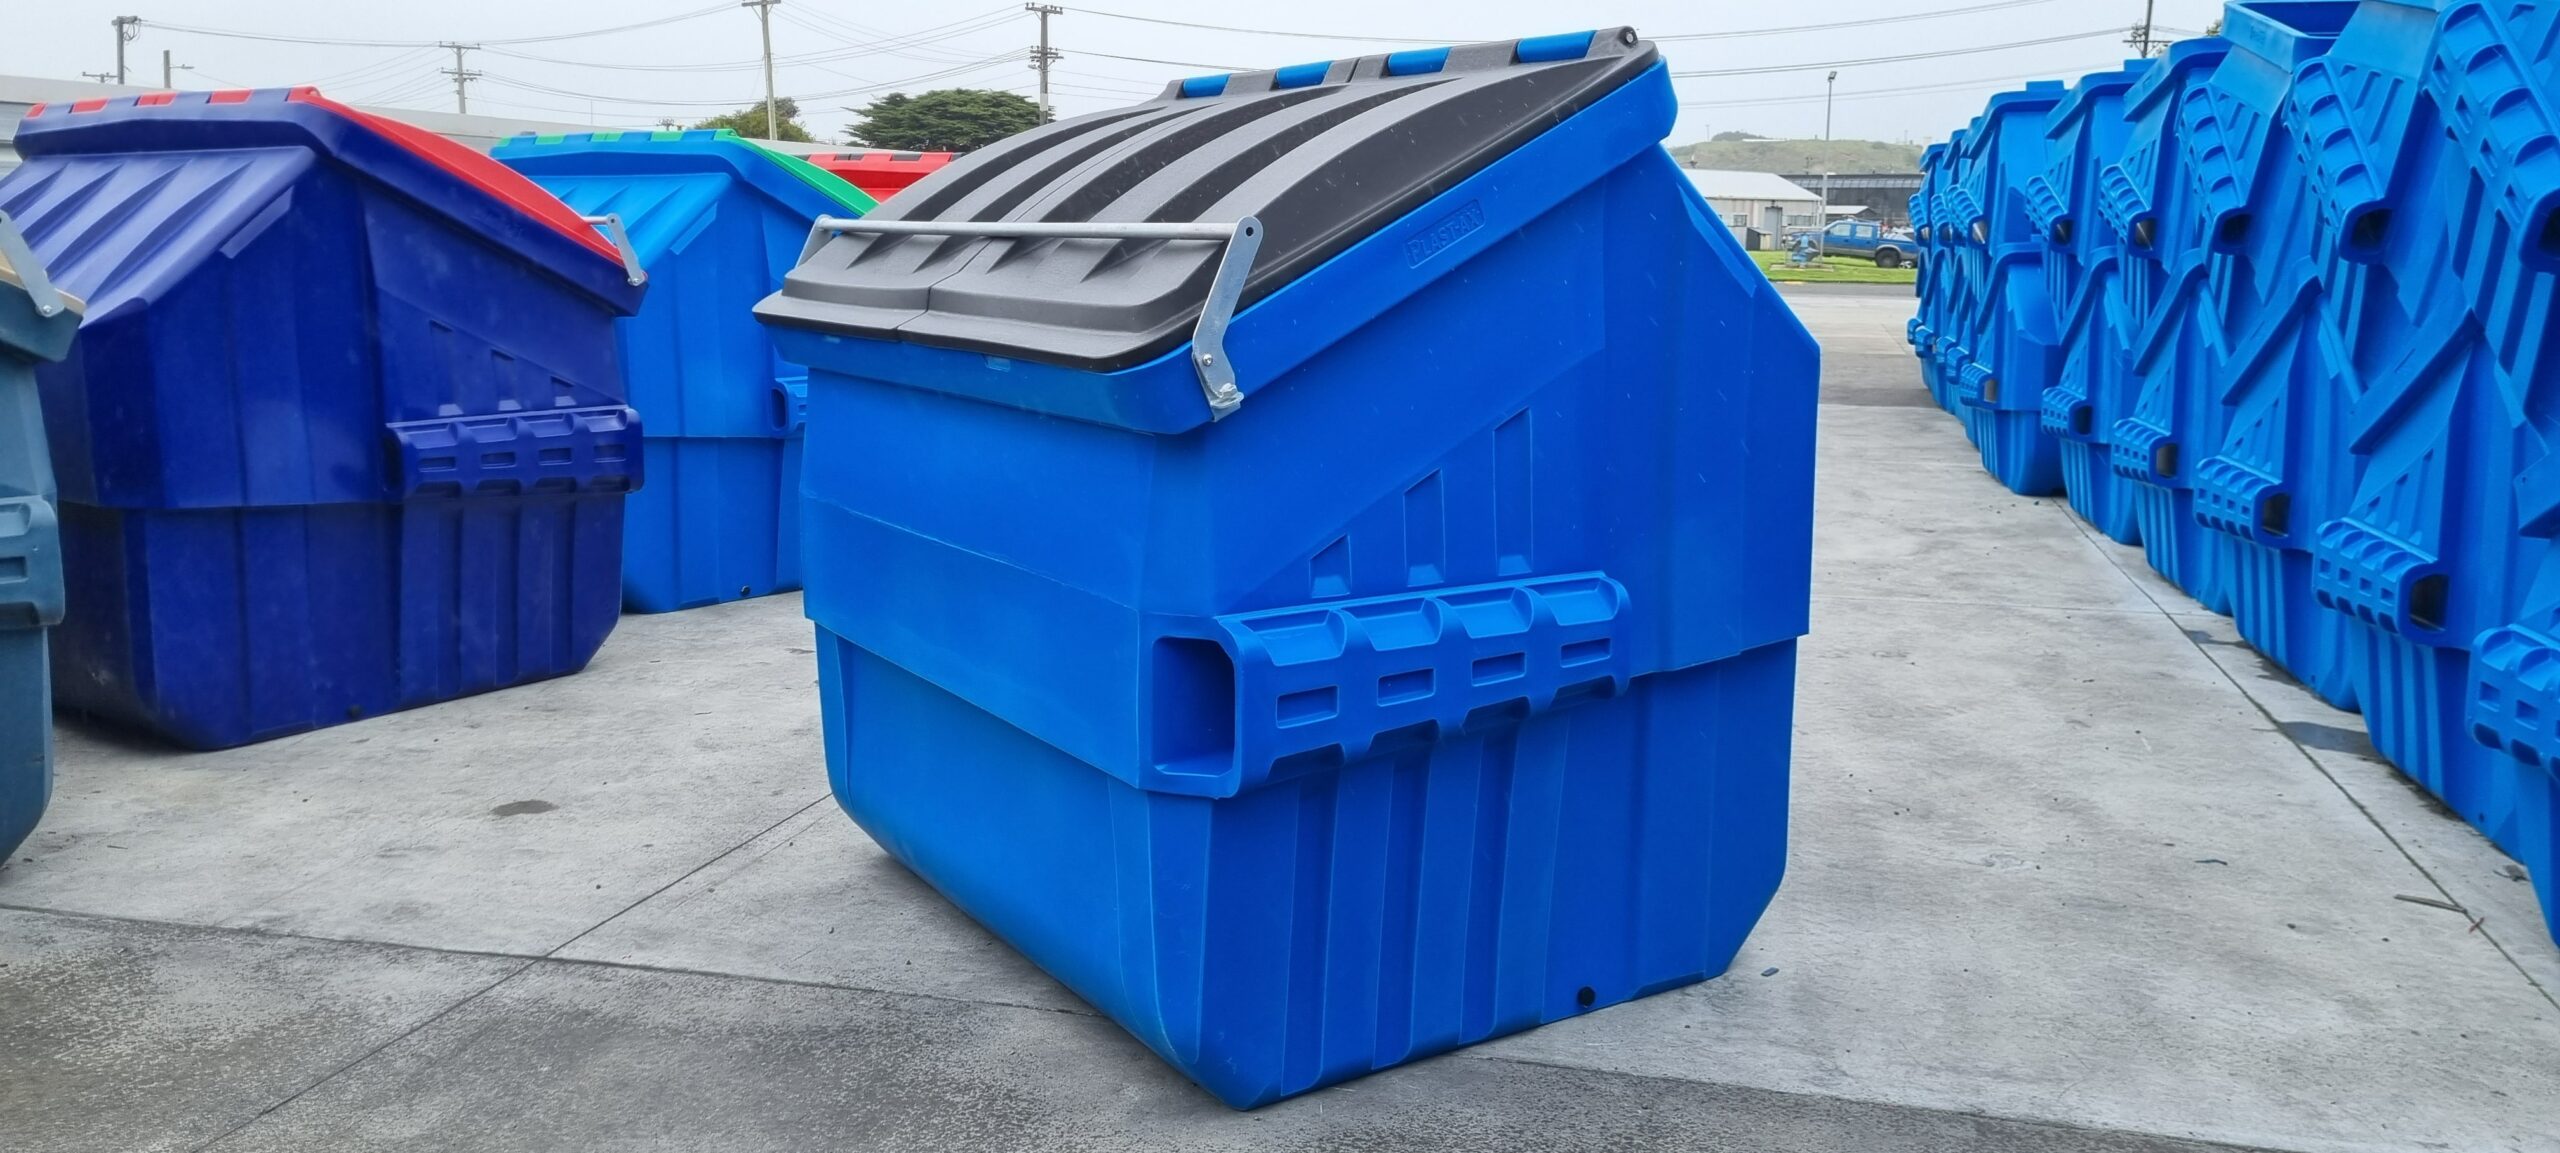 blue front FEL mini skip bins